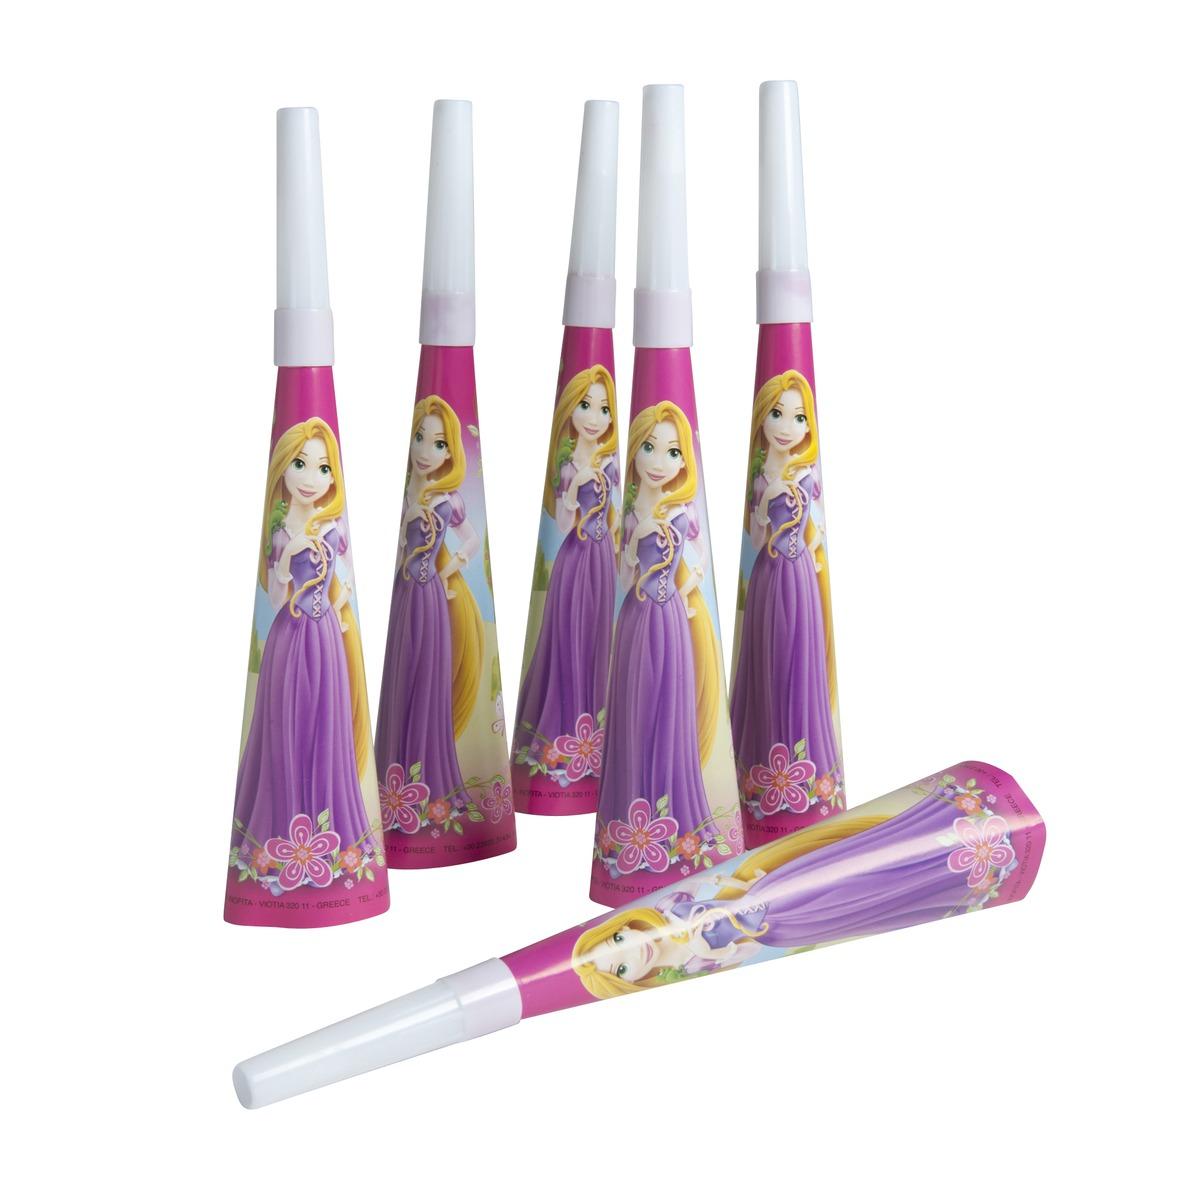 Lot de 6 trompettes Princesses en carton - 2,6 x 8,5 cm -Multicolore